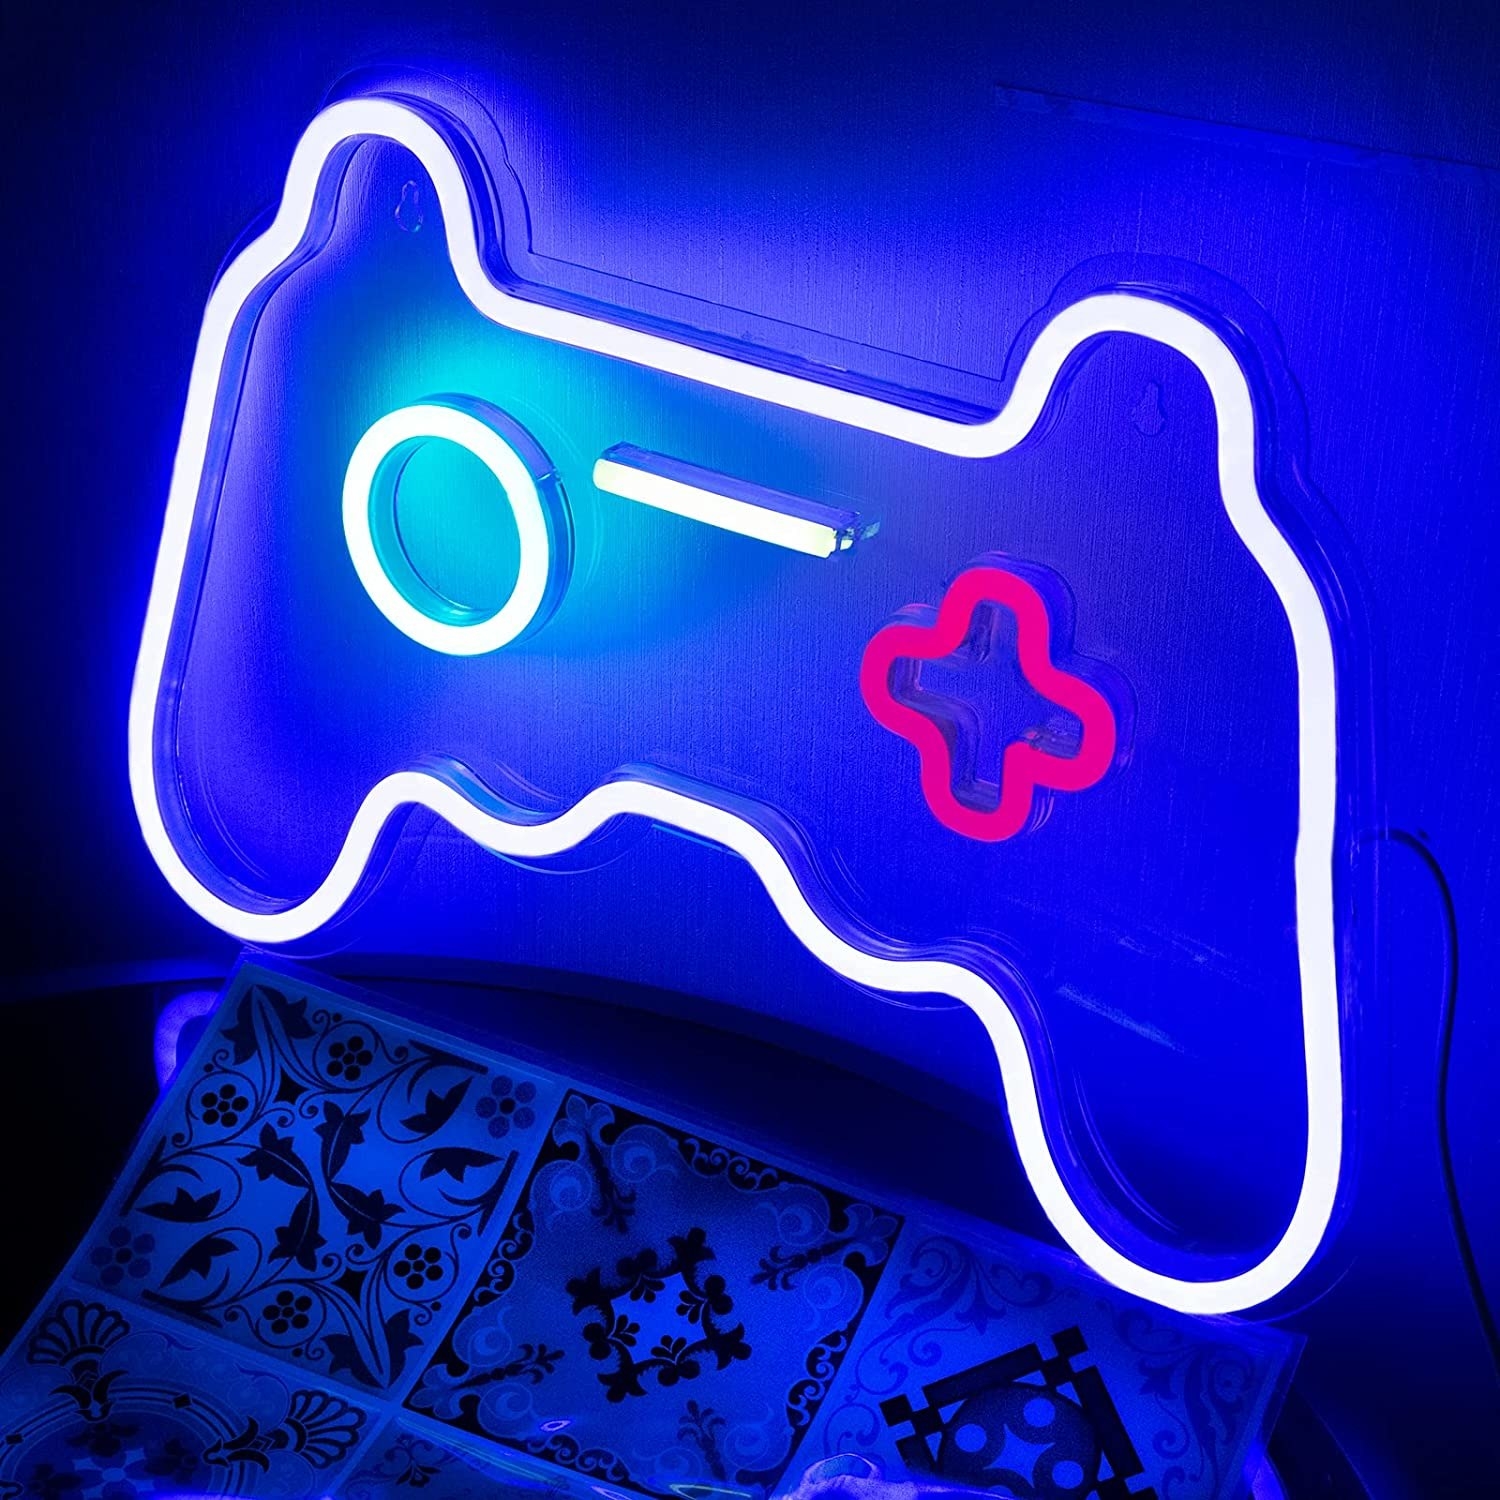 a neon game controller light